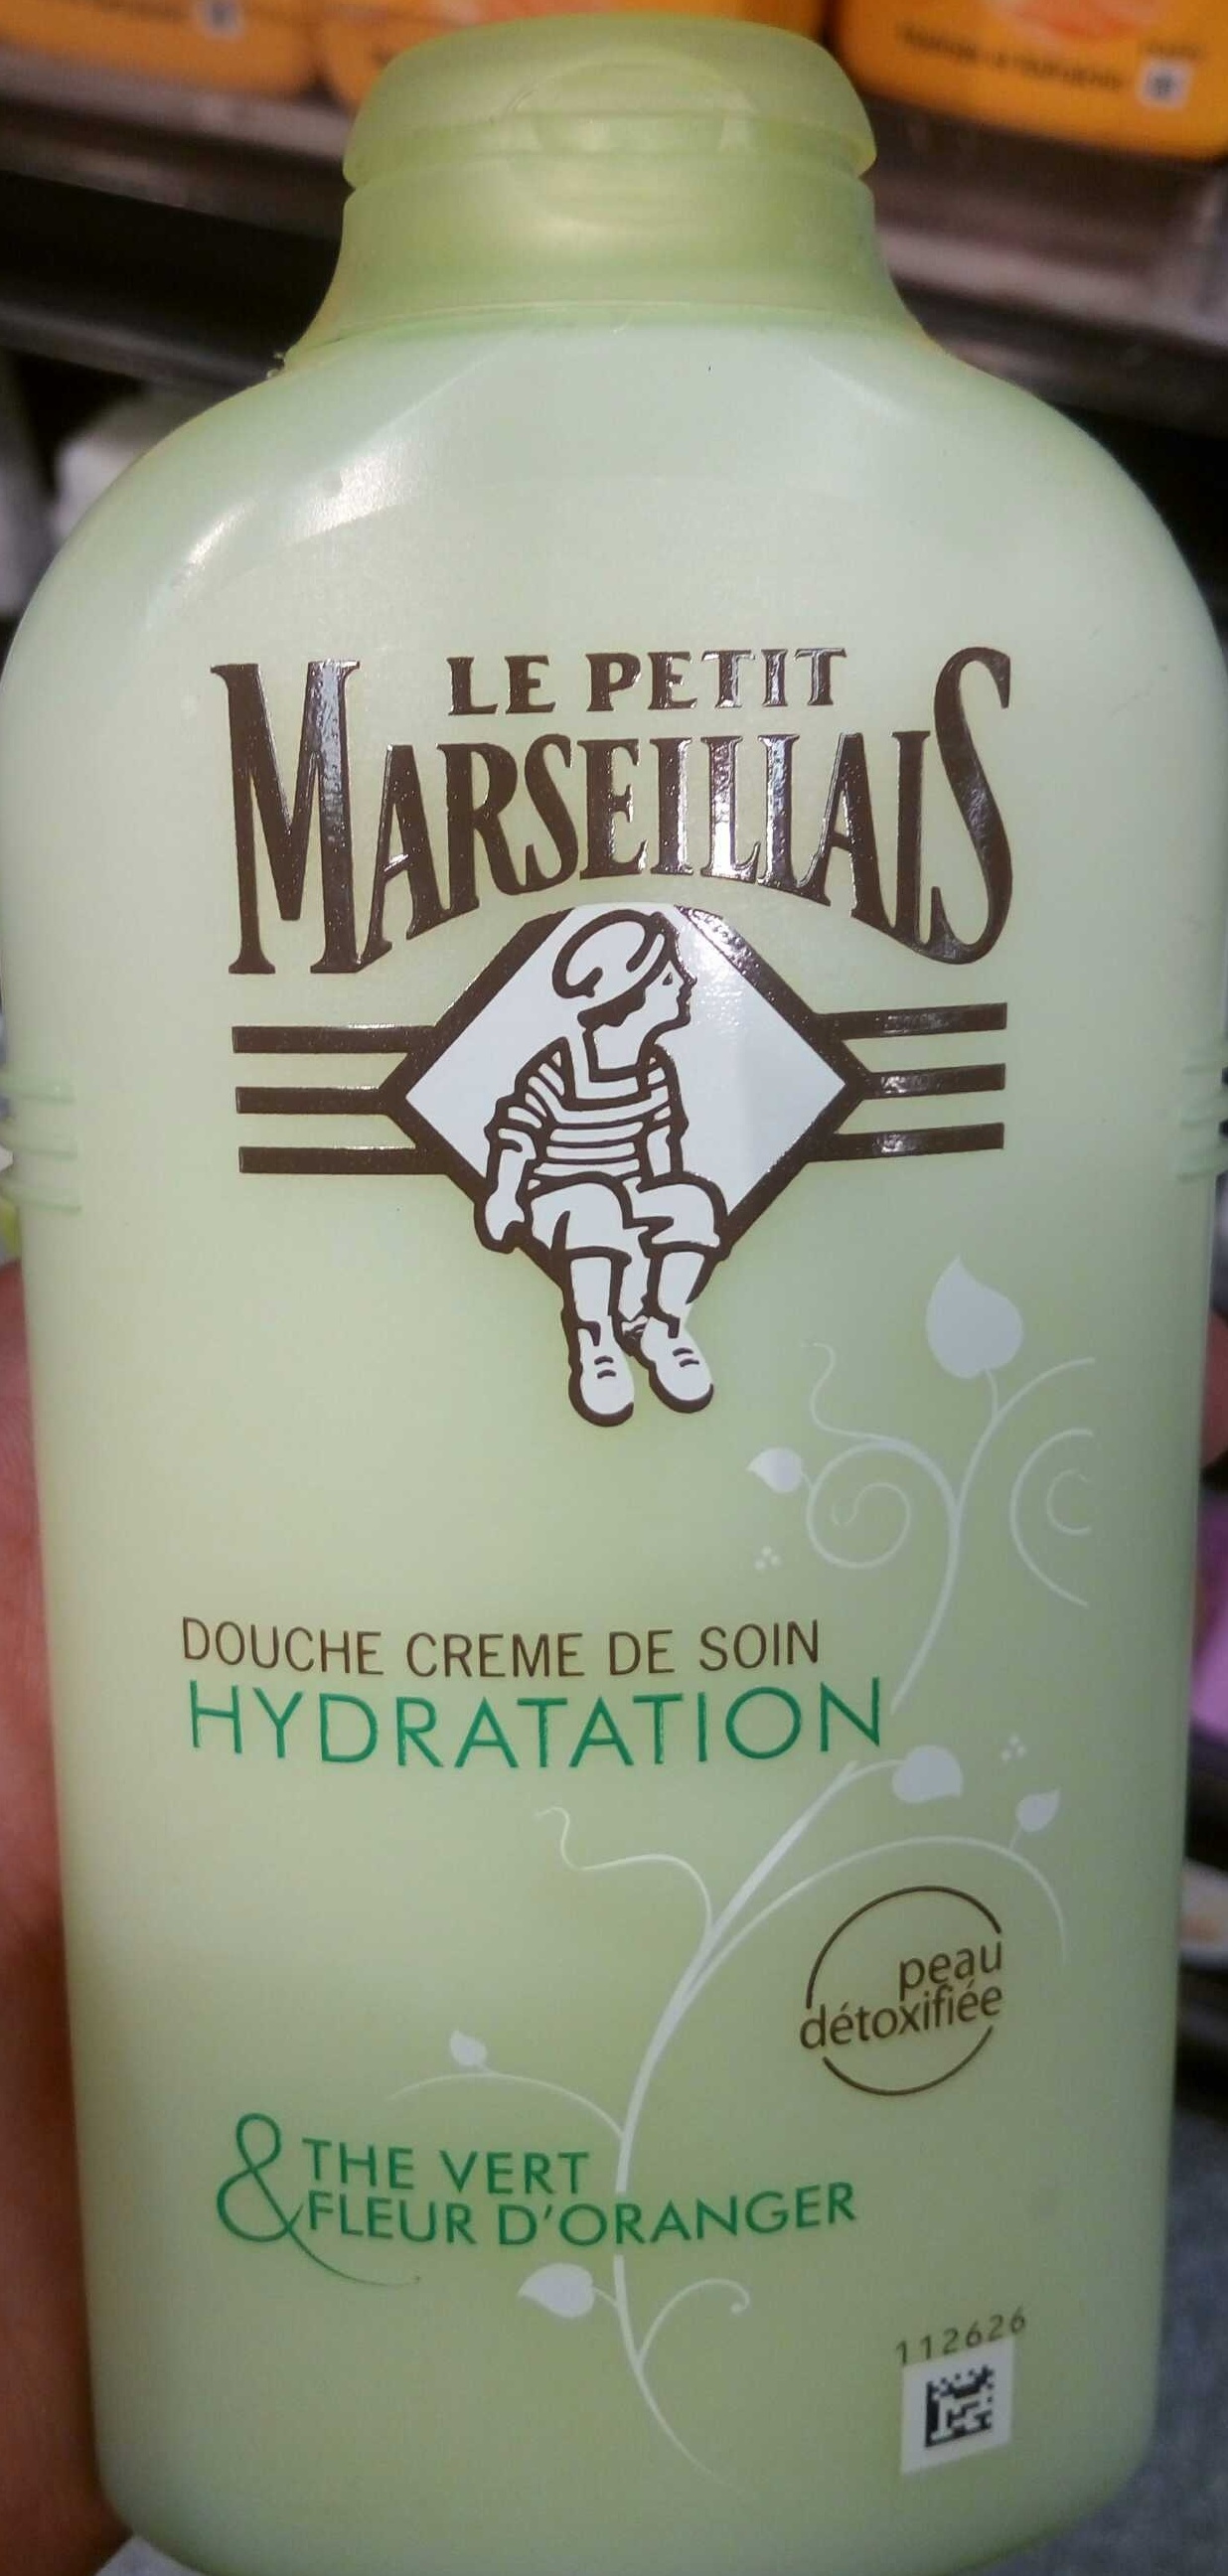 Douche Crème de soin Hydratation - Product - fr